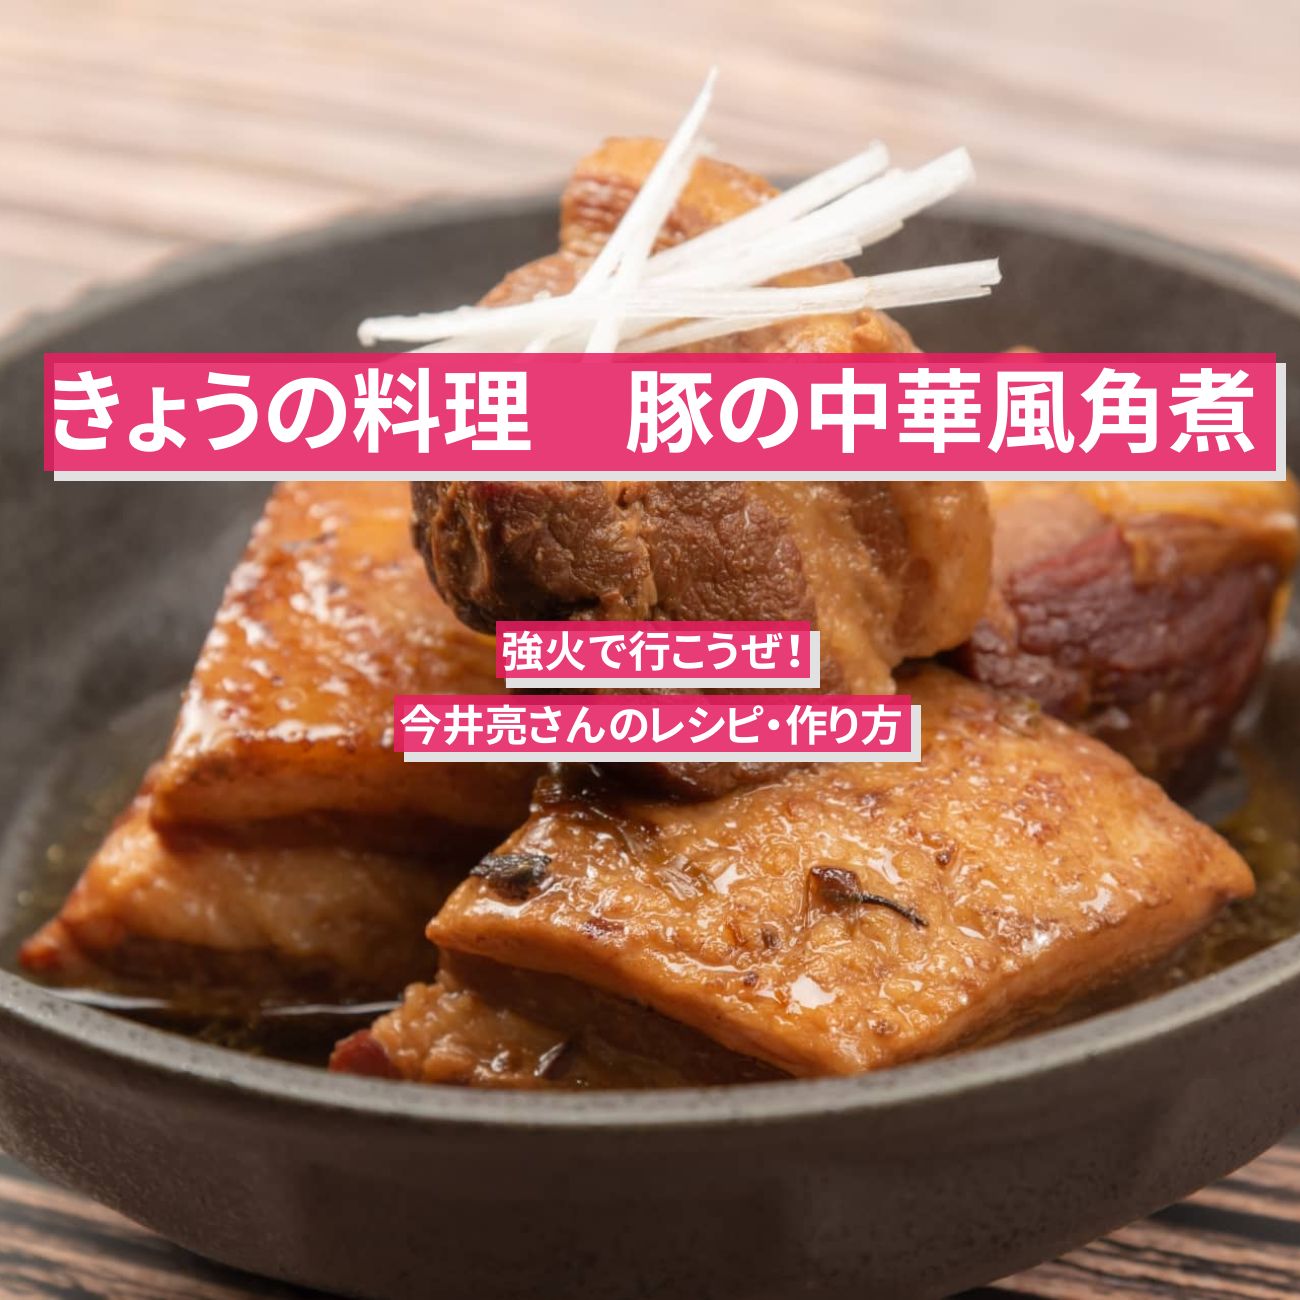 【きょうの料理】『豚の中華風角煮』今井亮さんのレシピ・作り方